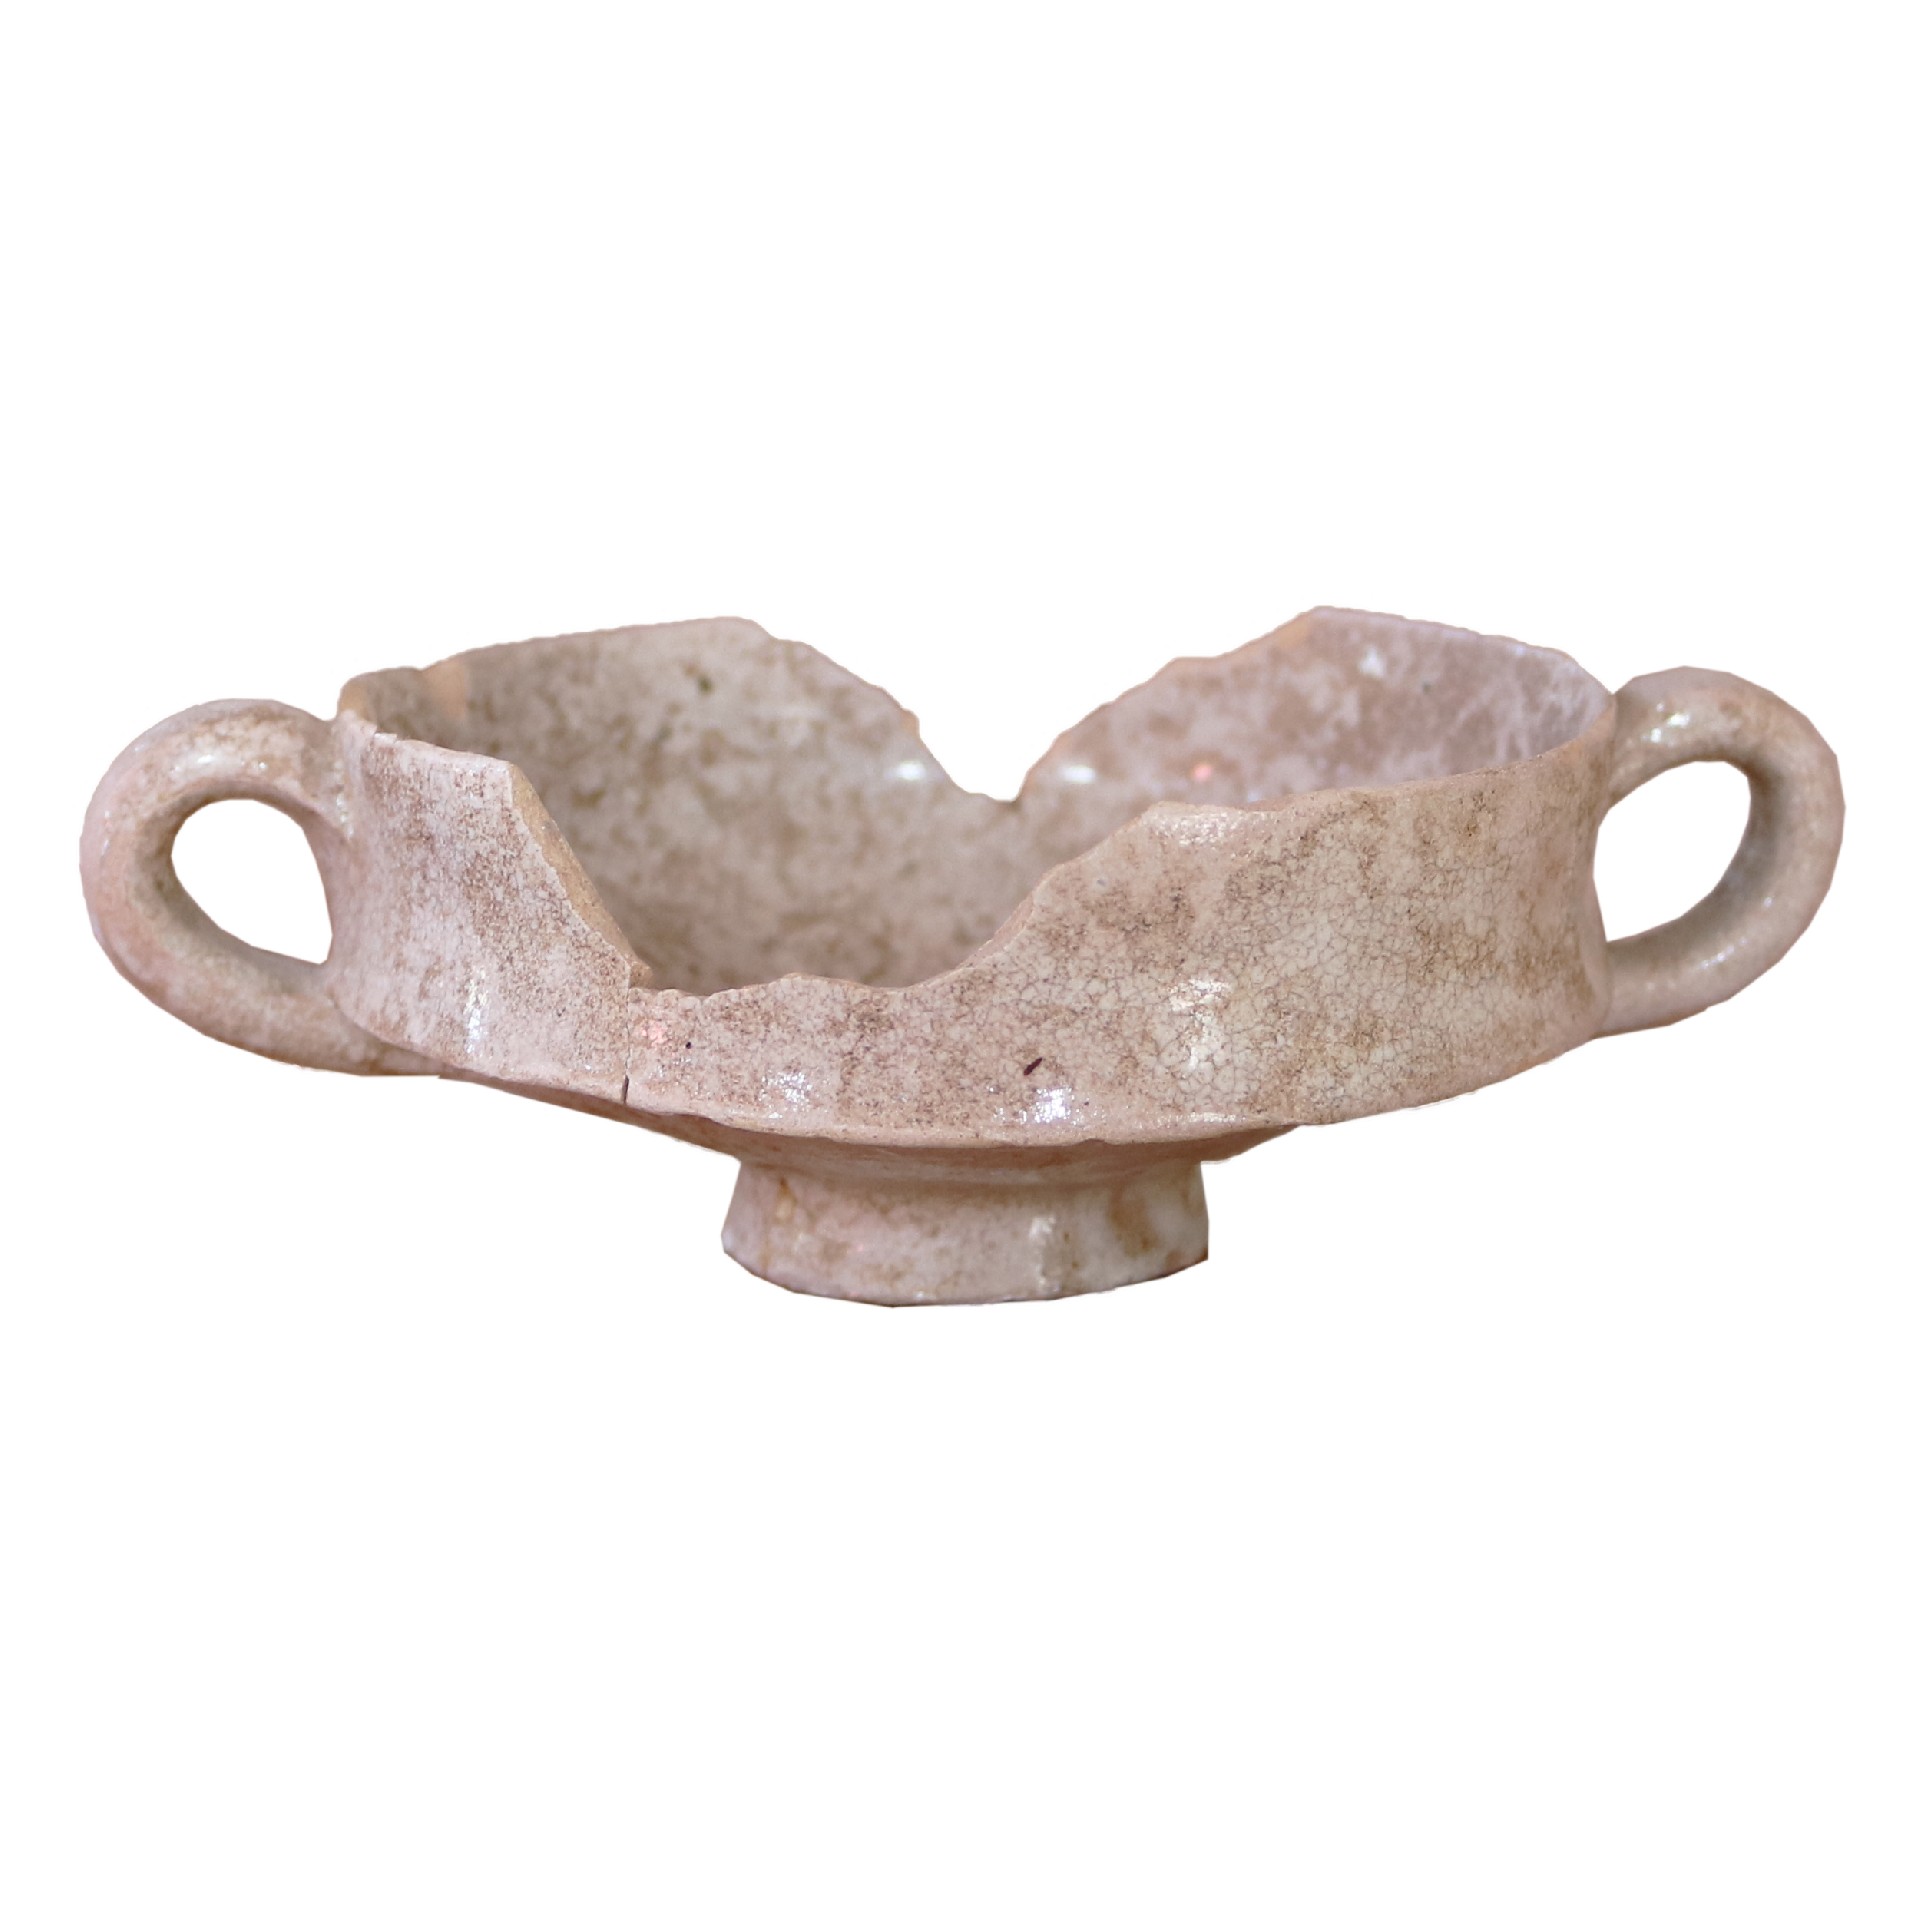 Antica ciotola in maiolica - Ceramiche - Oggettistica - Prodotti - Antichità Fiorillo